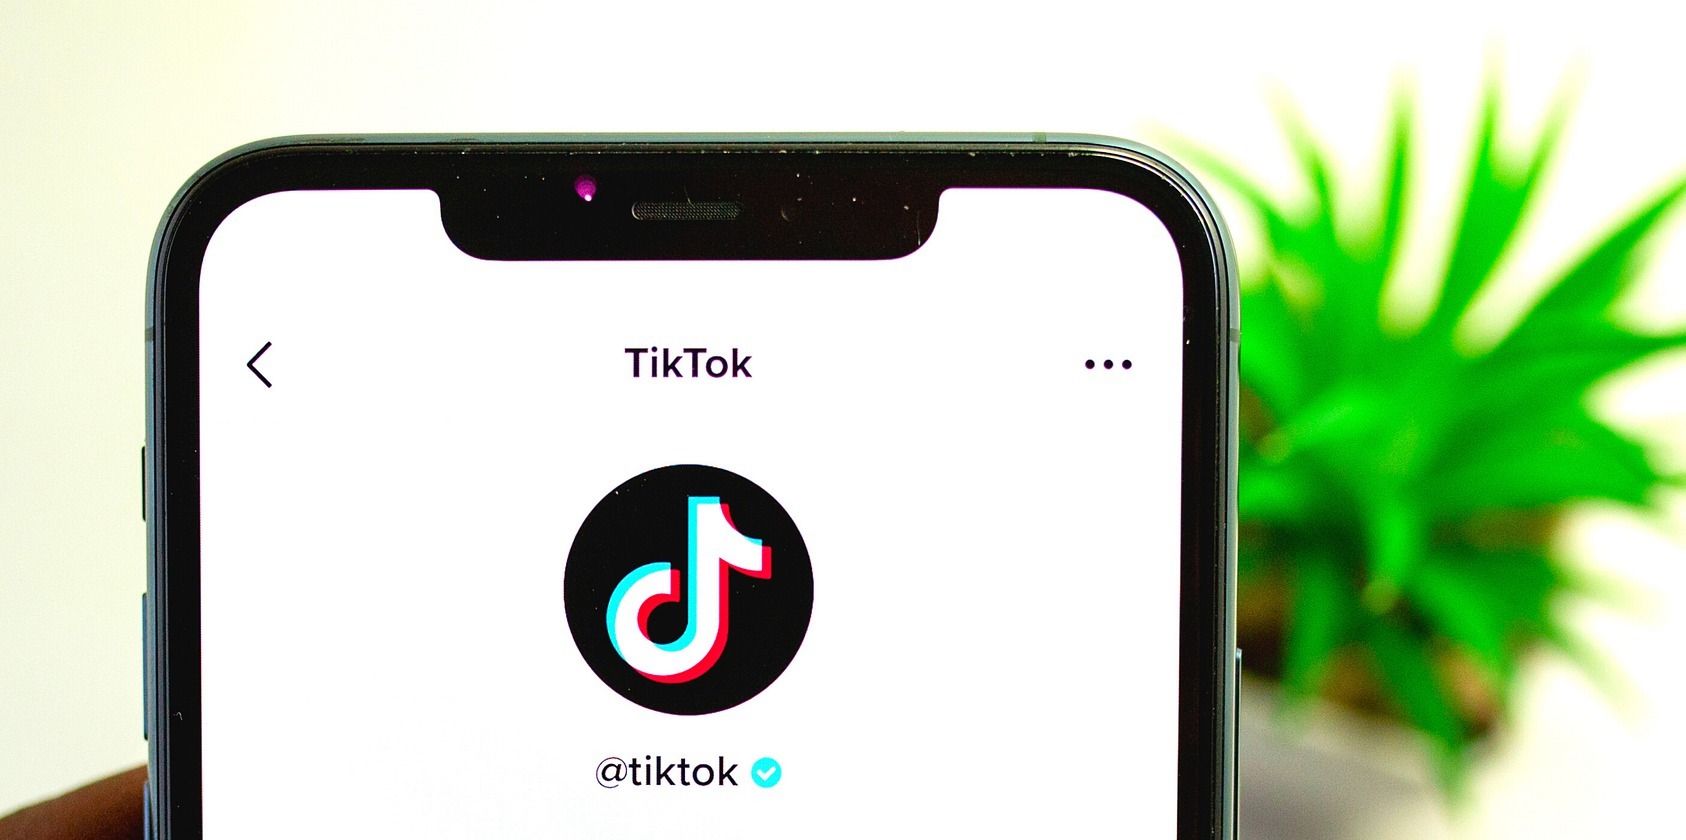 TikTok held in hand feature image